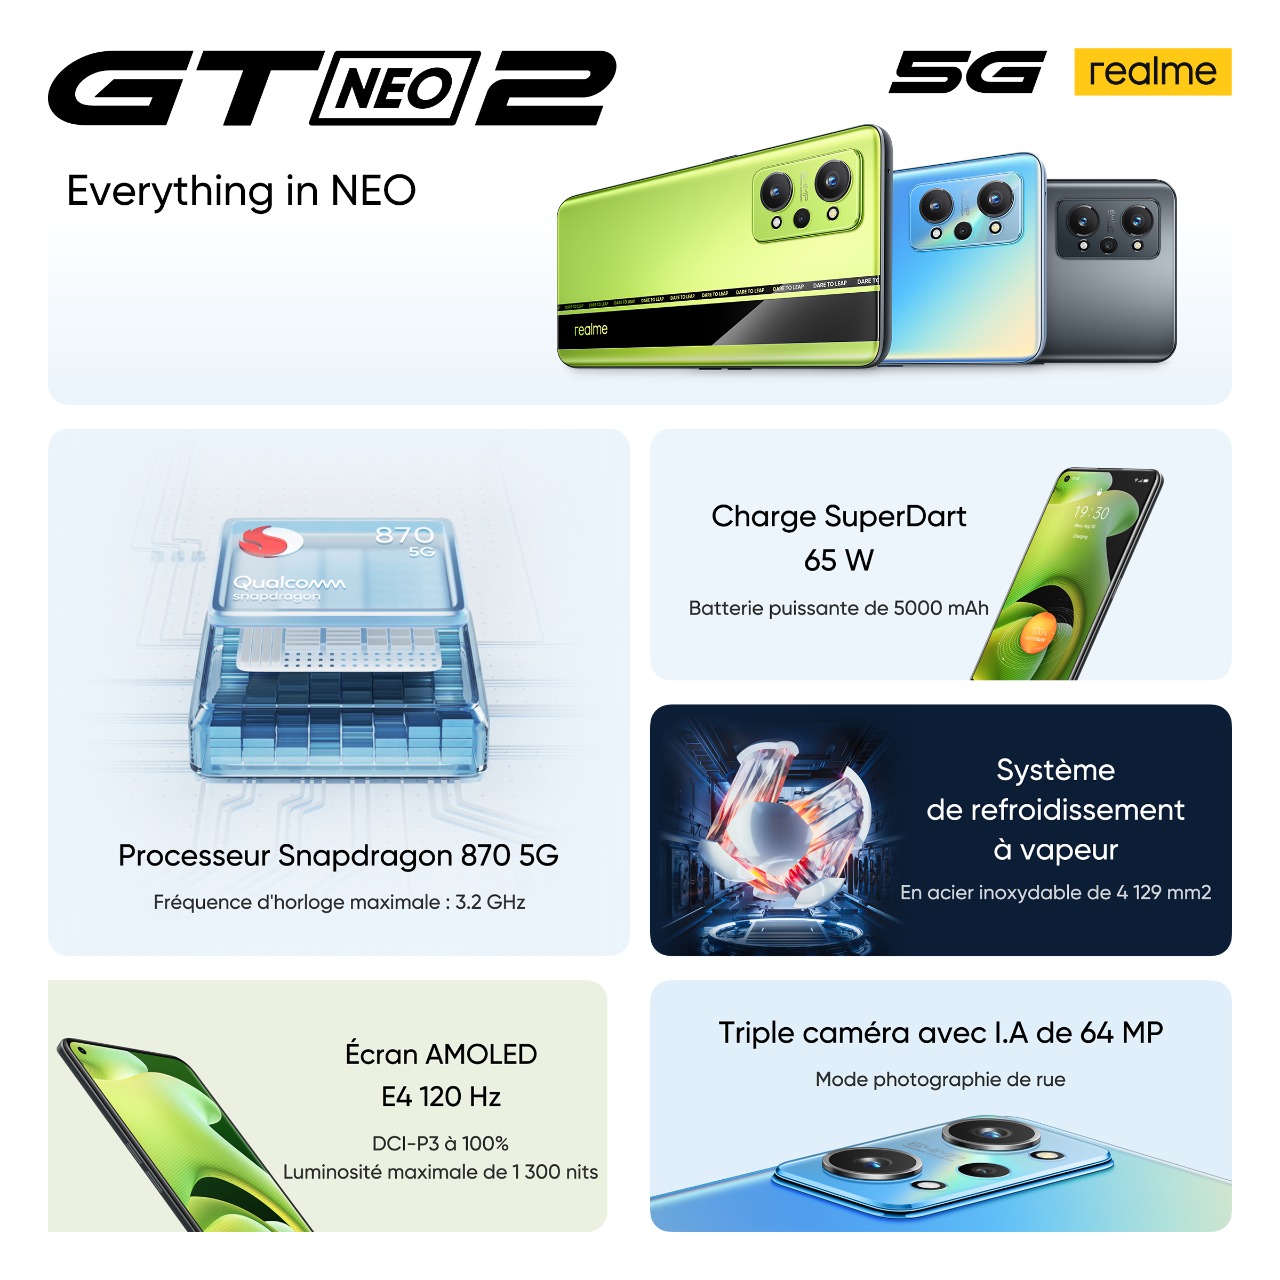 “ريلمي” تكشف “GT Neo2” وضع هاتفين للفوز